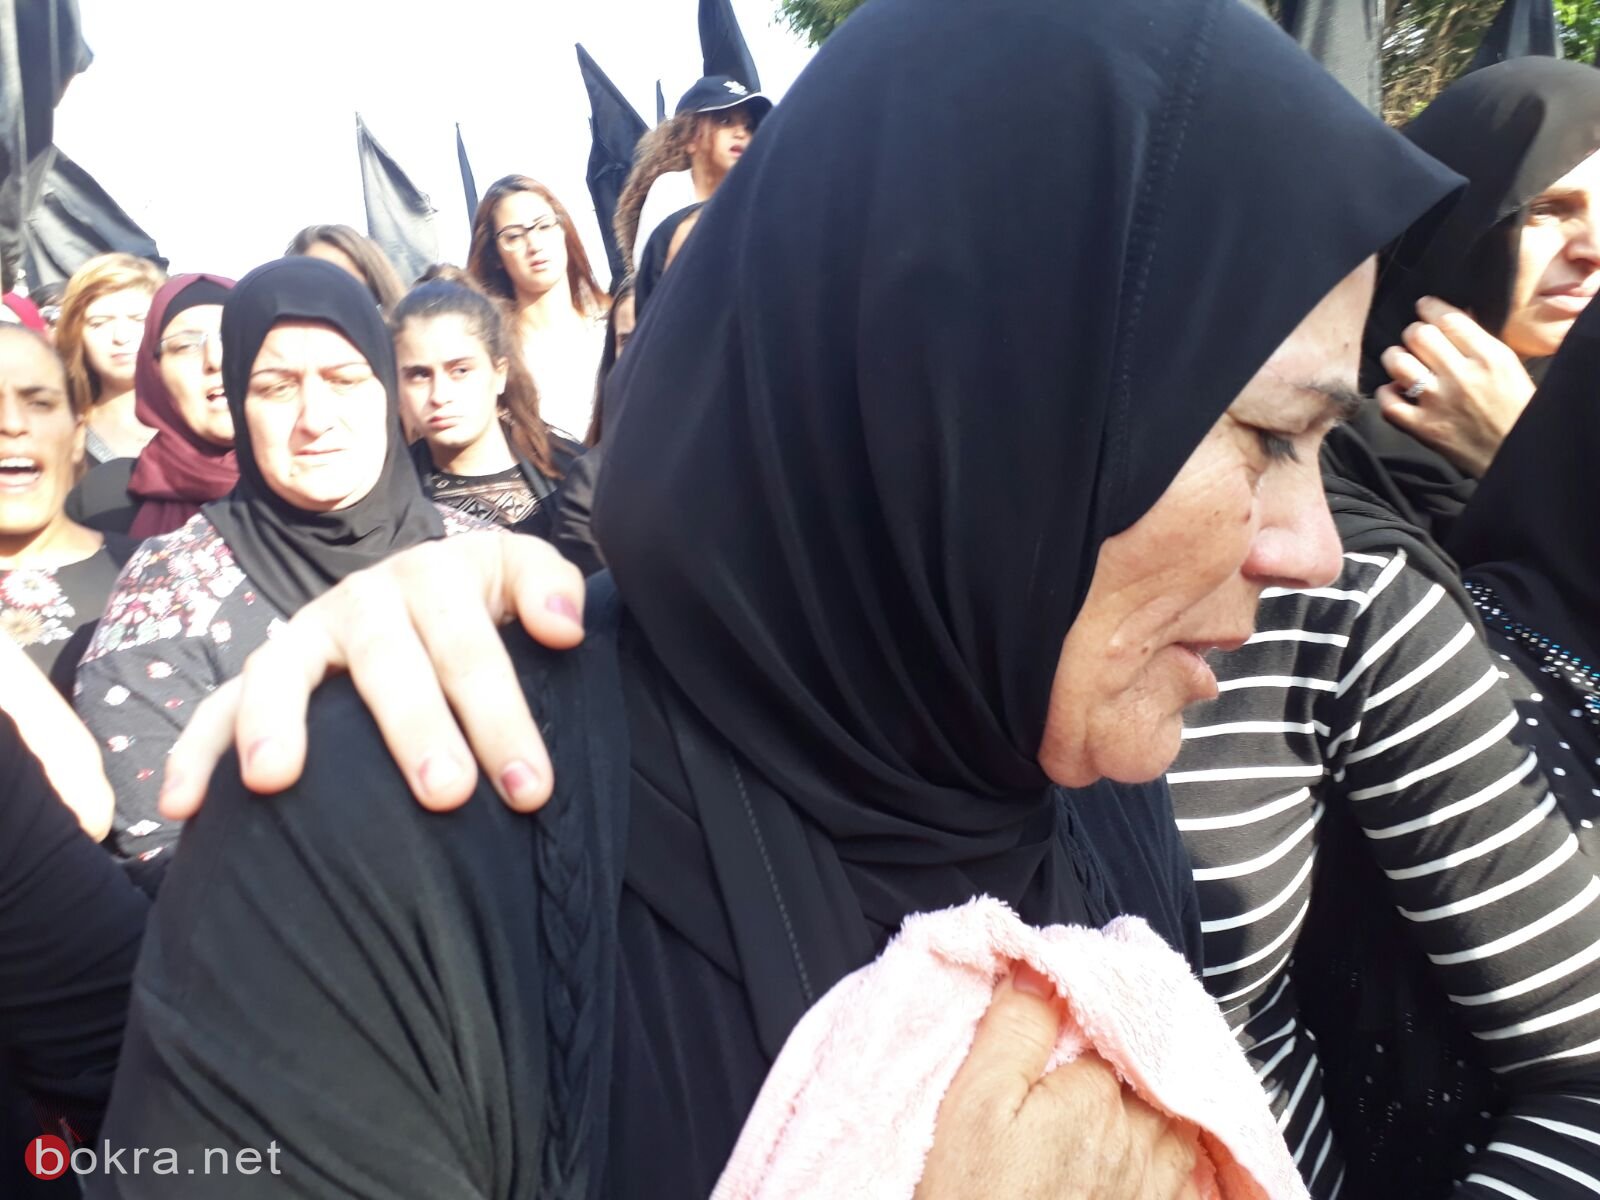 صراخ نساء ودعاء ام ثاكل في مظاهرة مجد الكروم امس ضد العنف-5